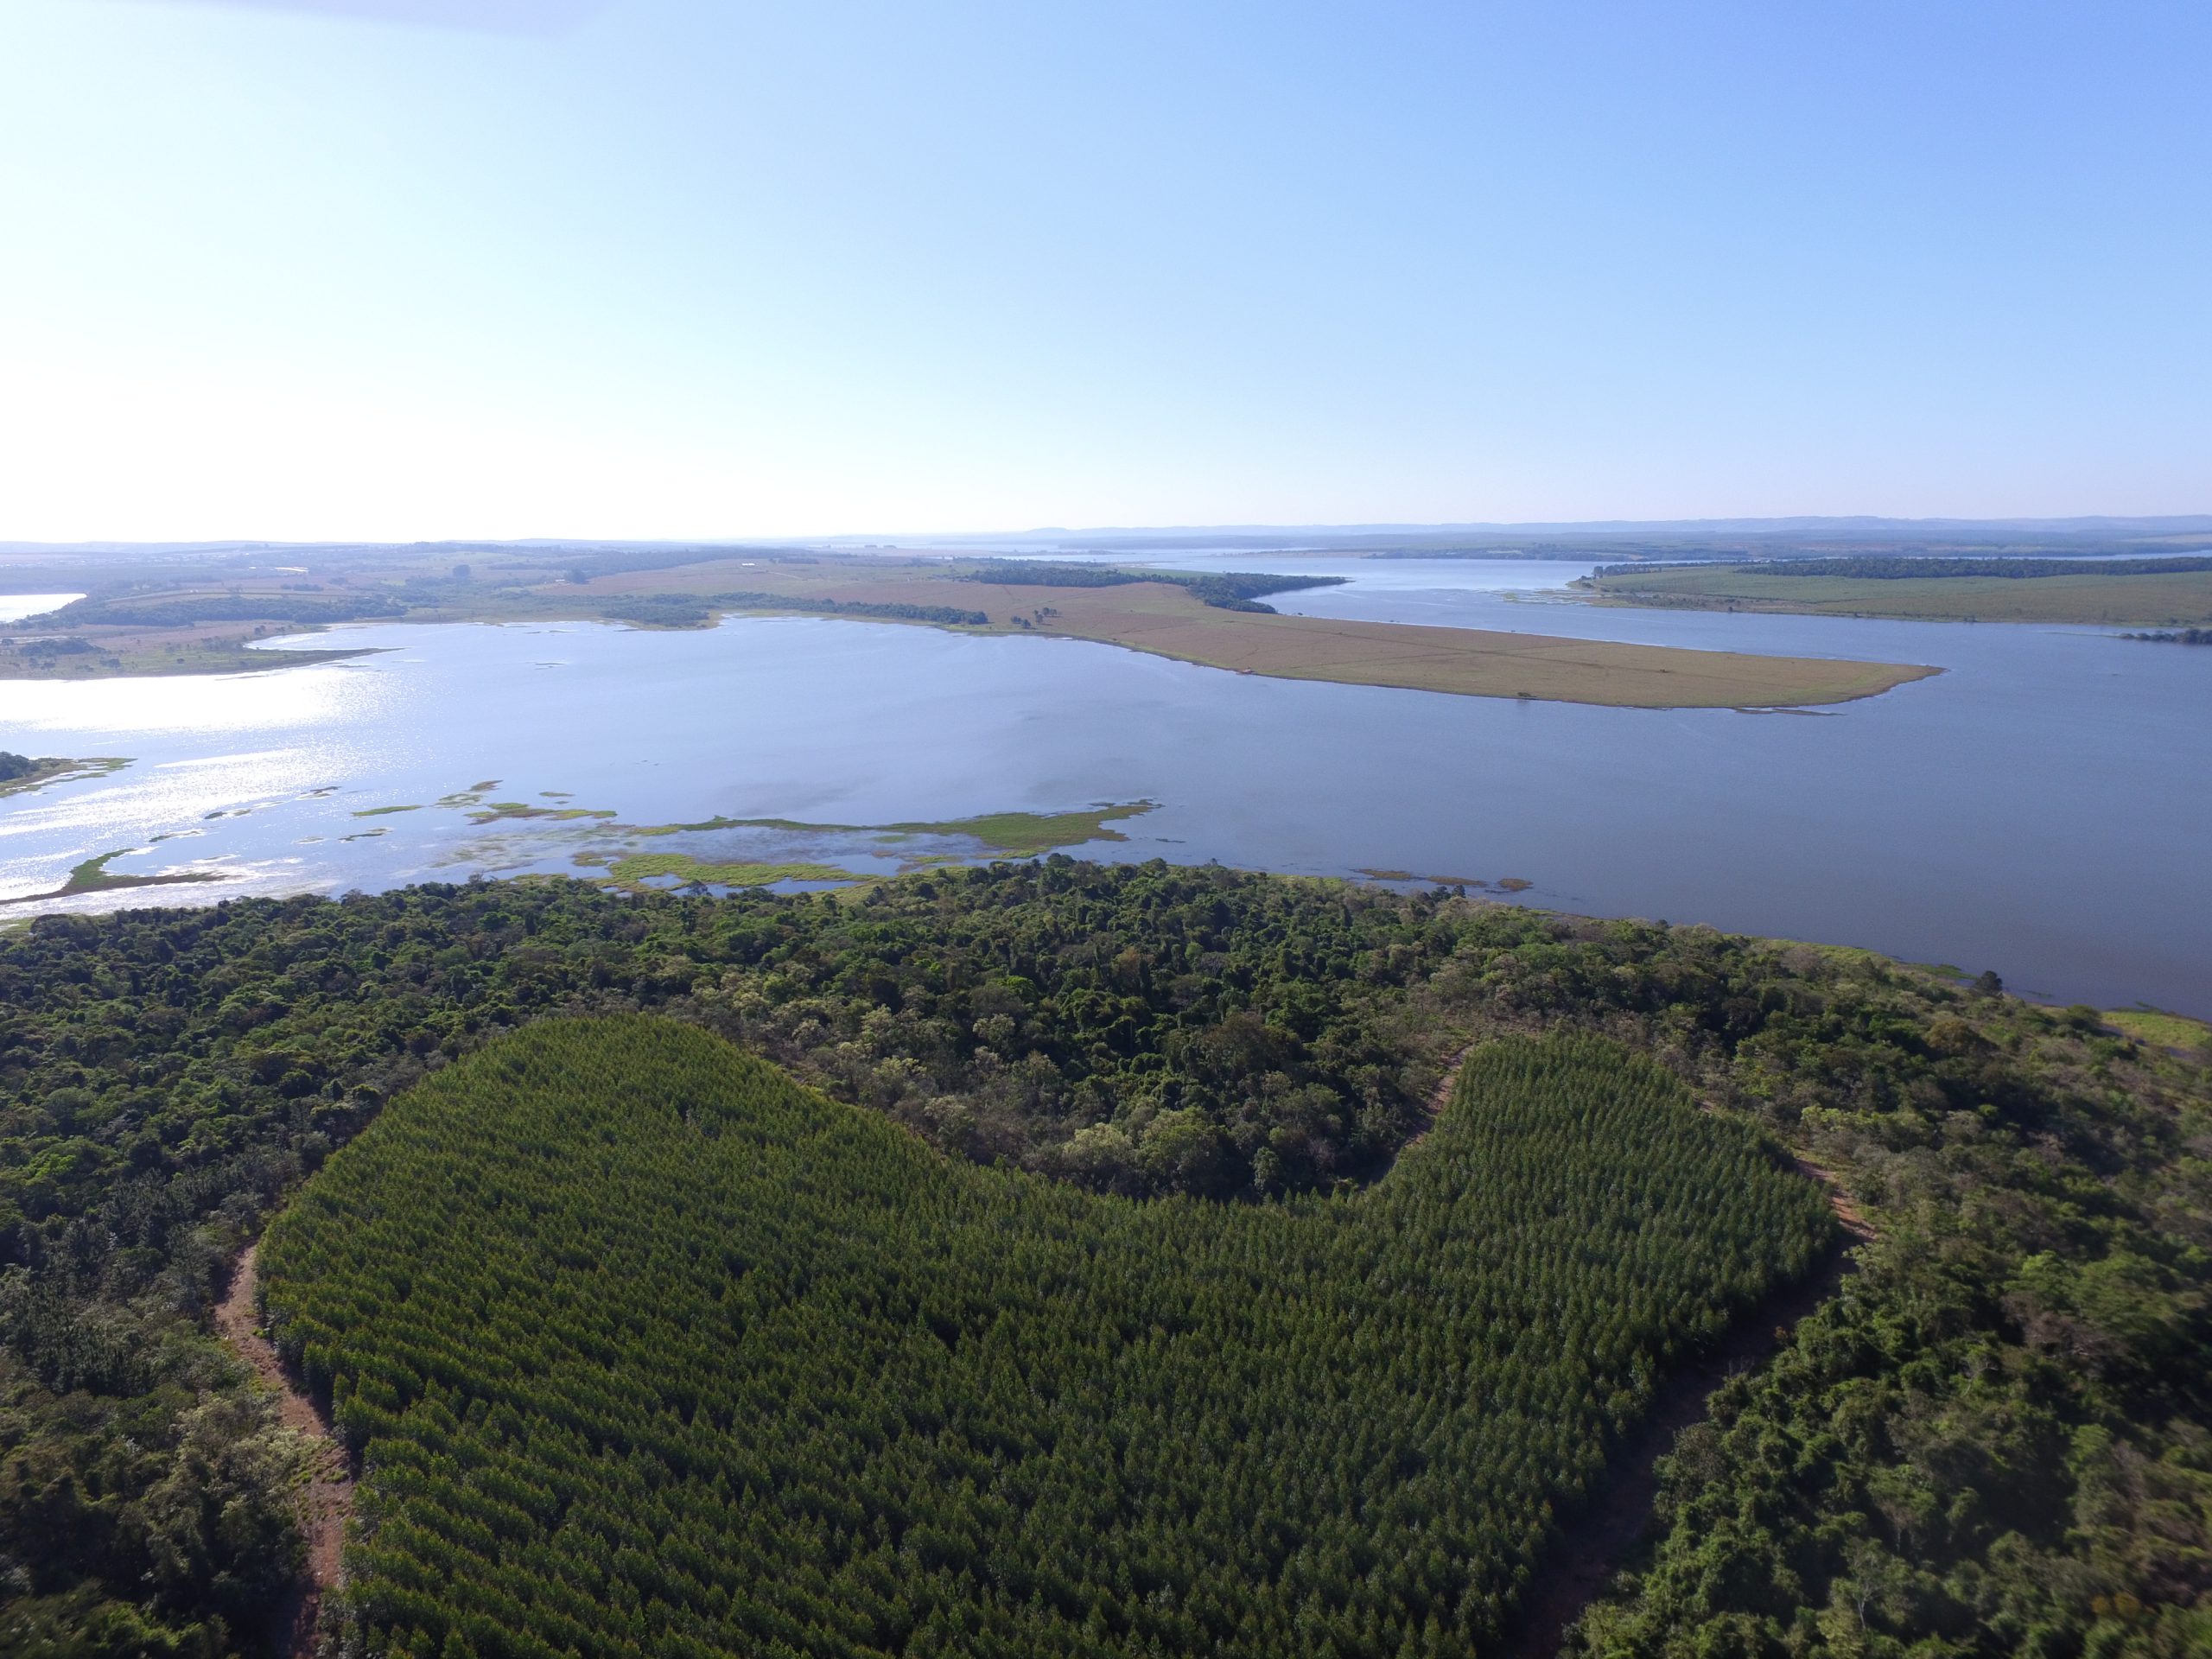 Vista aérea da paisagem de um rio. Em sua margem, florestas nativa e de eucalipto.